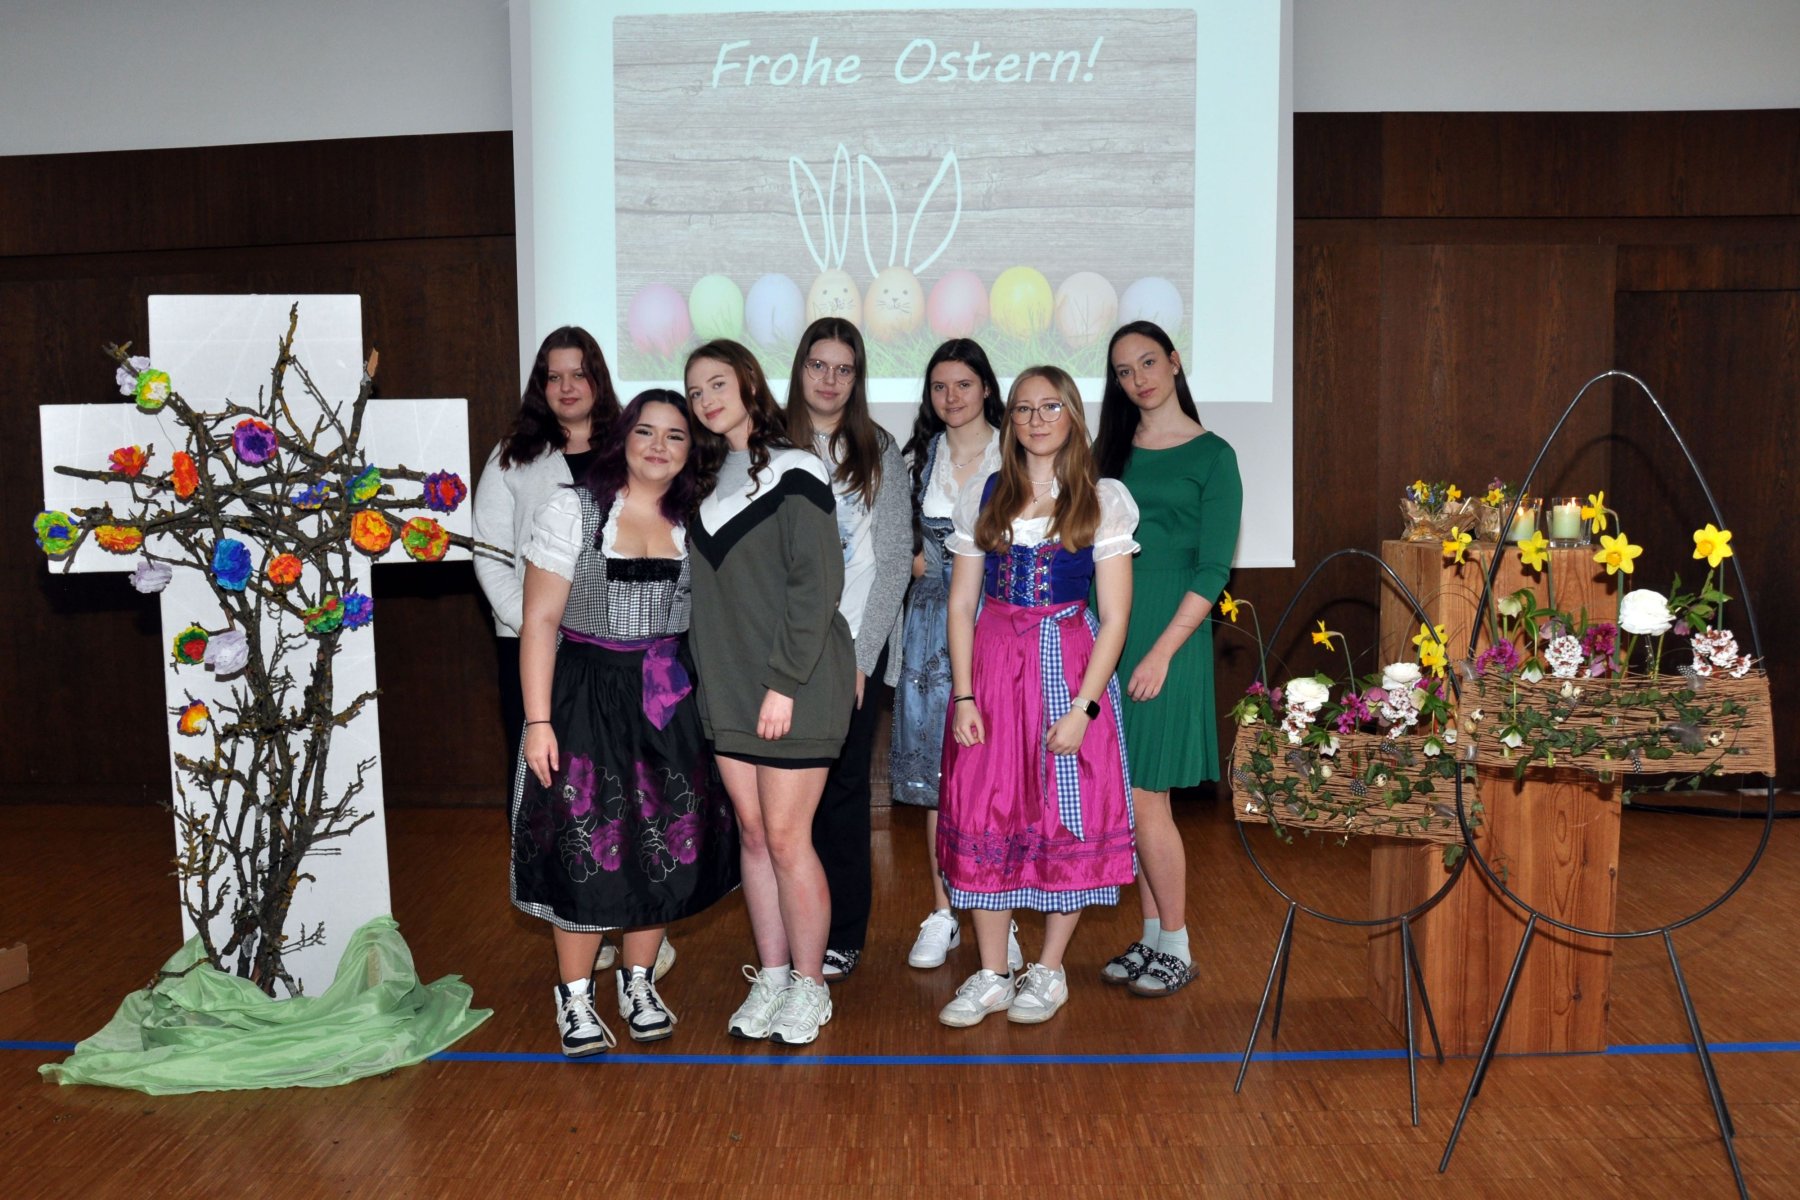 Mädchengruppe steht zwischen österlicher Großraumdekoration und wünscht frohe Ostern